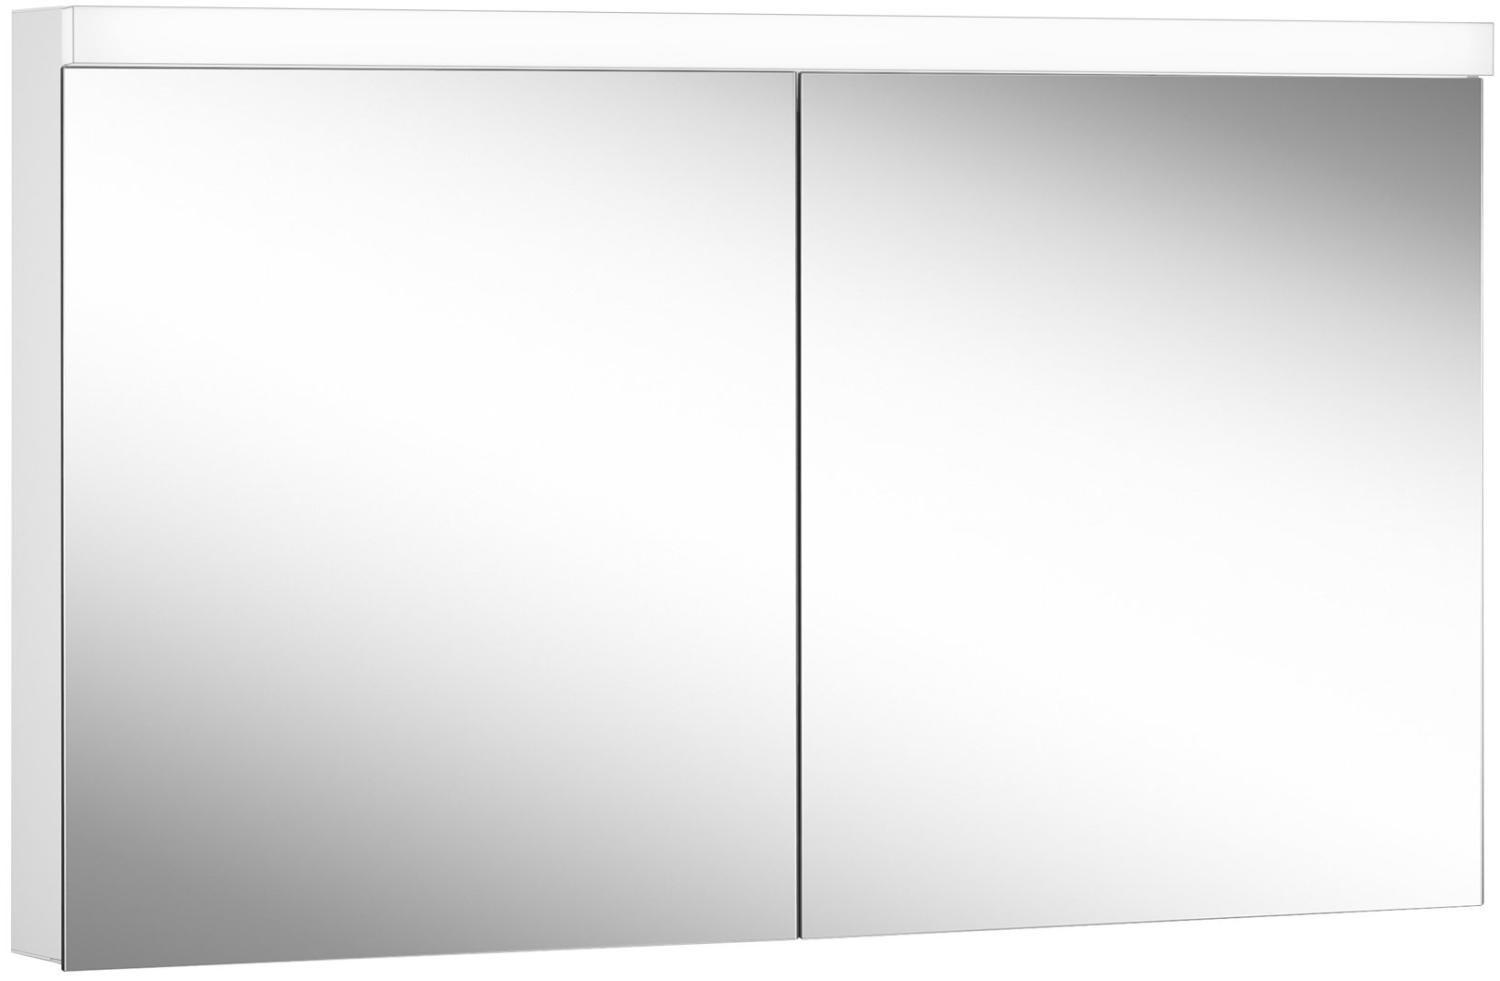 Schneider DAILY Line Ultimate LED Lichtspiegelschrank, 2 Doppelspiegeltüren, 140x74,8x13cm, 178. 140. 02. 02, Ausführung: EU-Norm/Korpus weiss - 178. 140. 02. 02 Bild 1